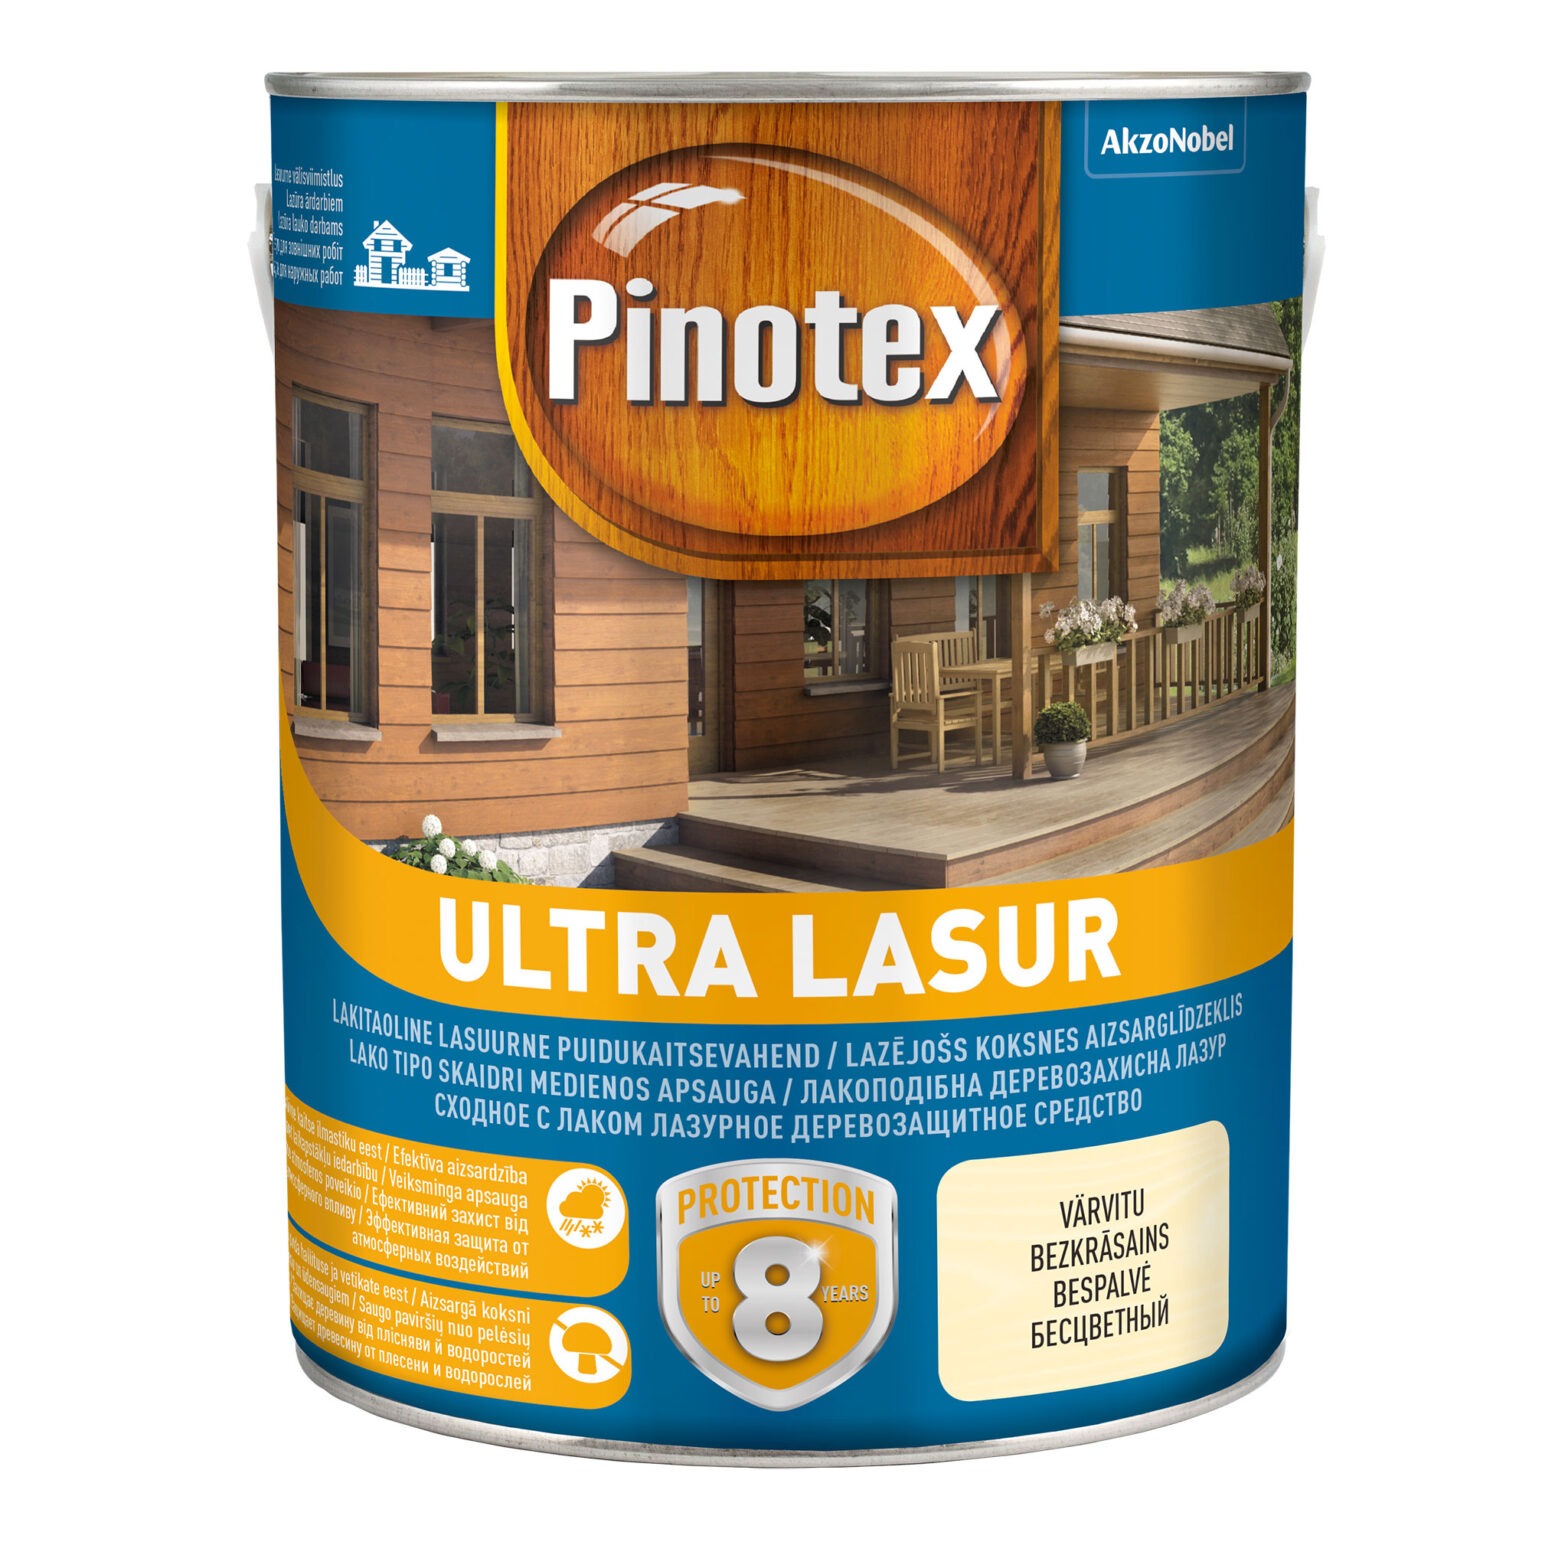 PINOTEX ULTRA LASUR TEAK EU 3L.